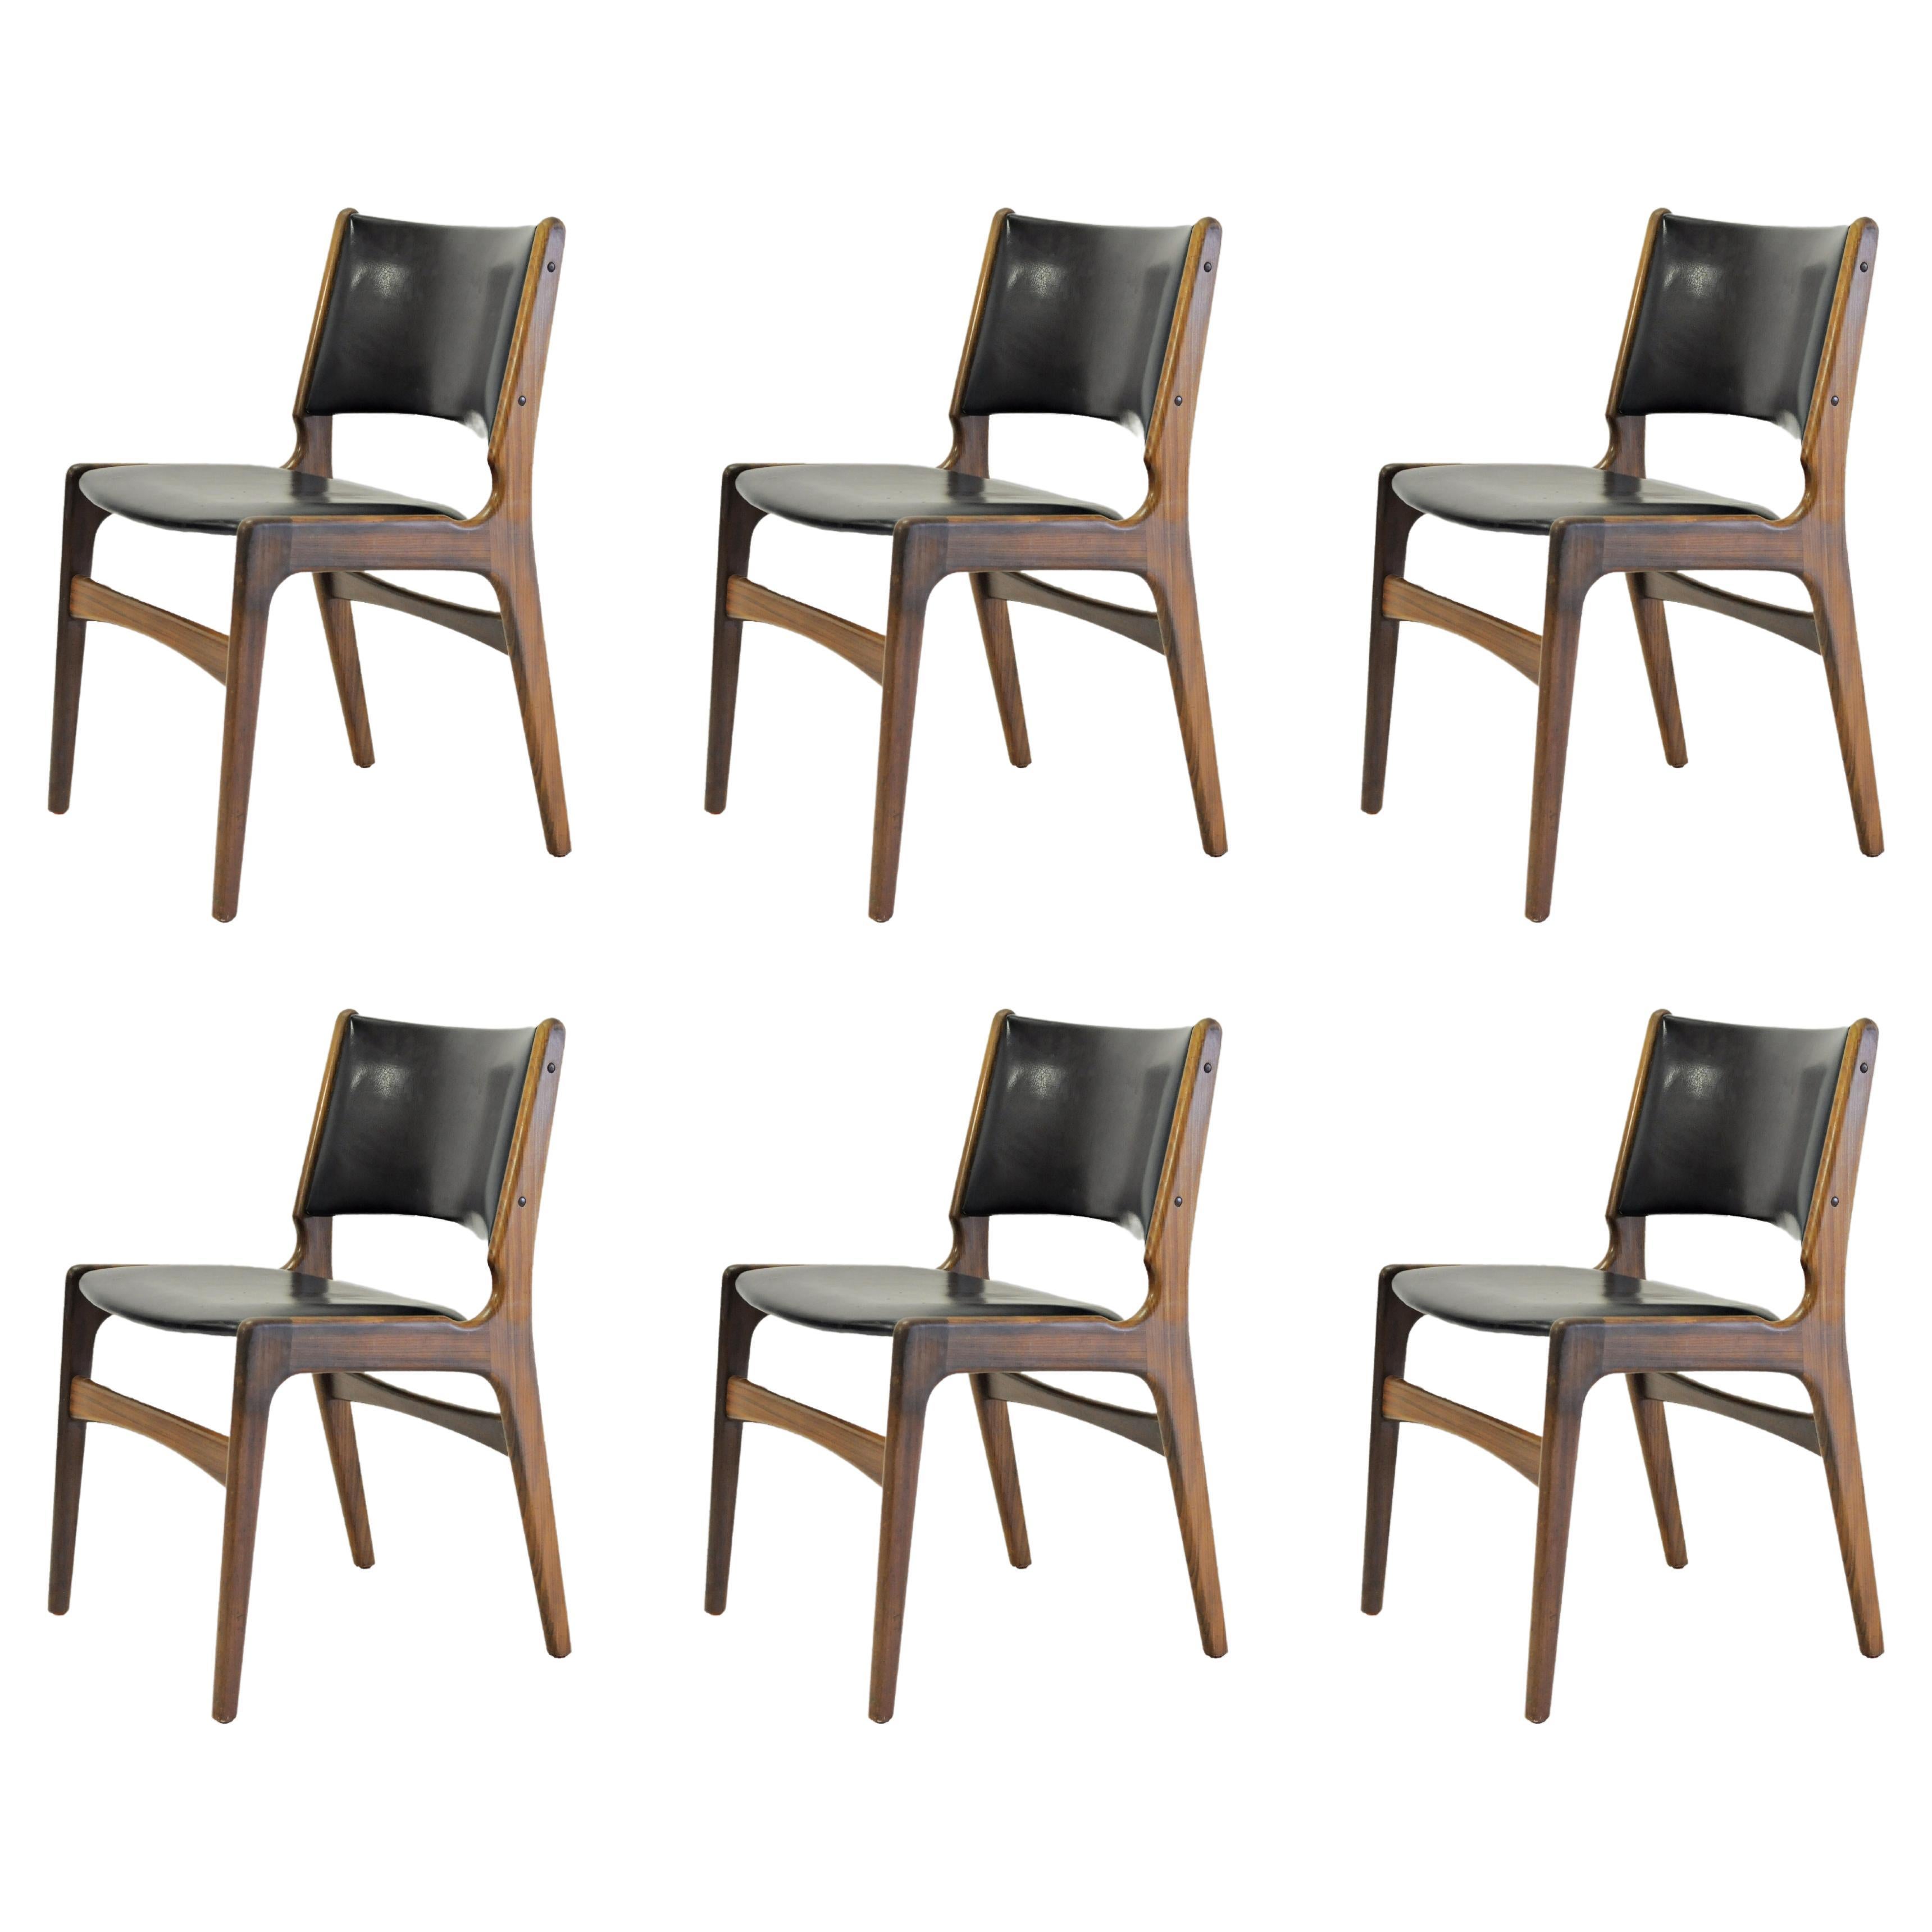 Six chaises de salle à manger restaurées Erik Buch en teck massif, tapissées sur mesure